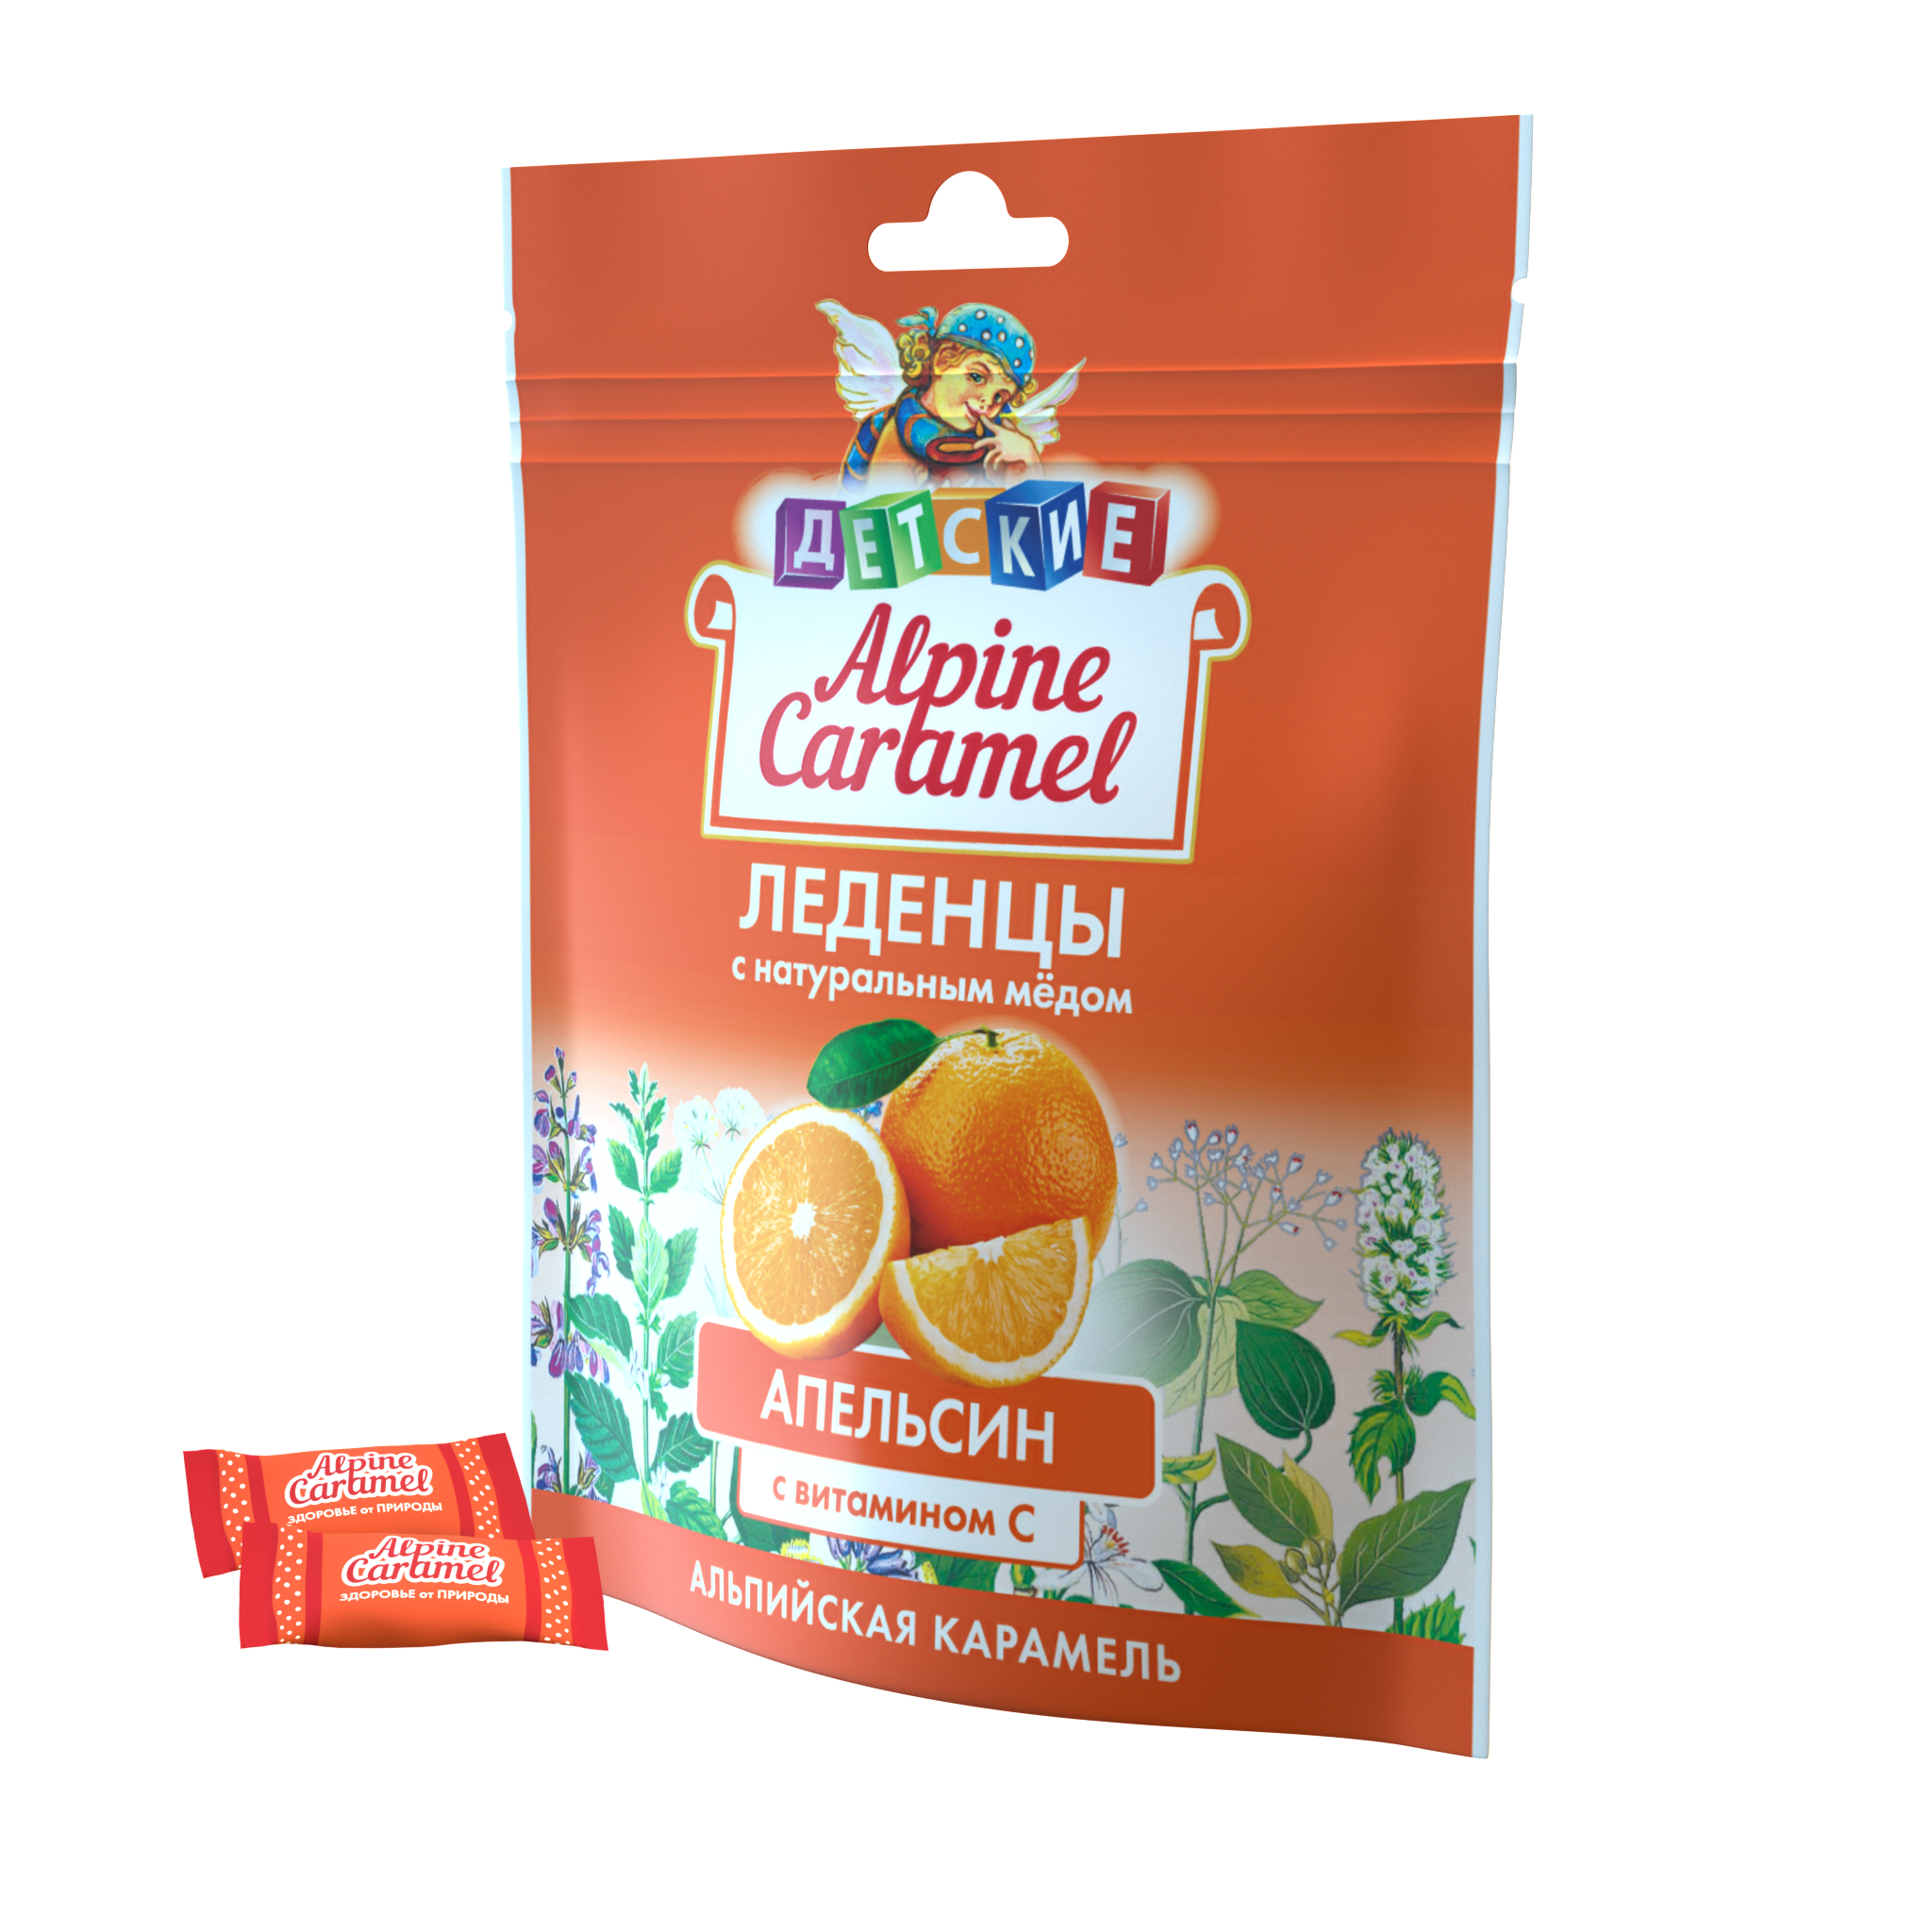 Alpine Caramel Альпийская Карамель леденцы дет (апельсин с медом и витамином С), 75 г альпийская карамель леденцы 75 г 1 шт вишня